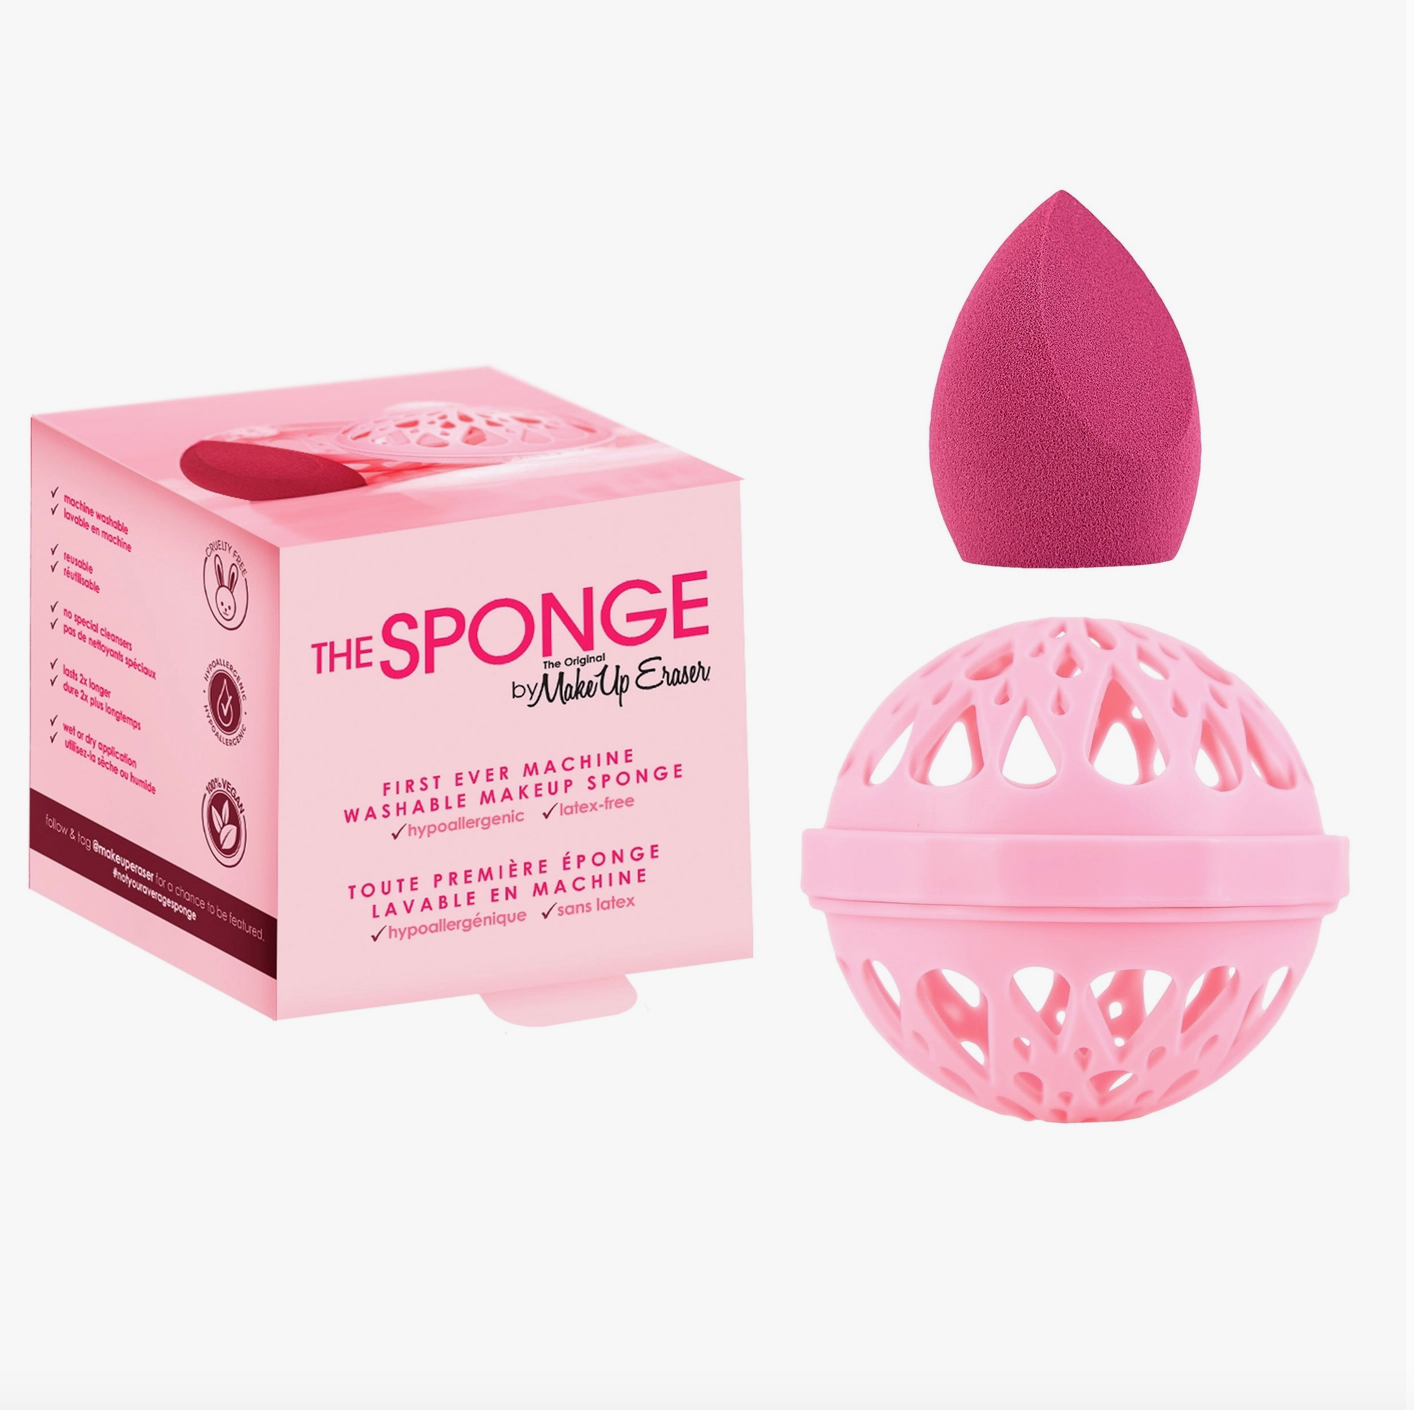 MakeUp Eraser : The Sponge